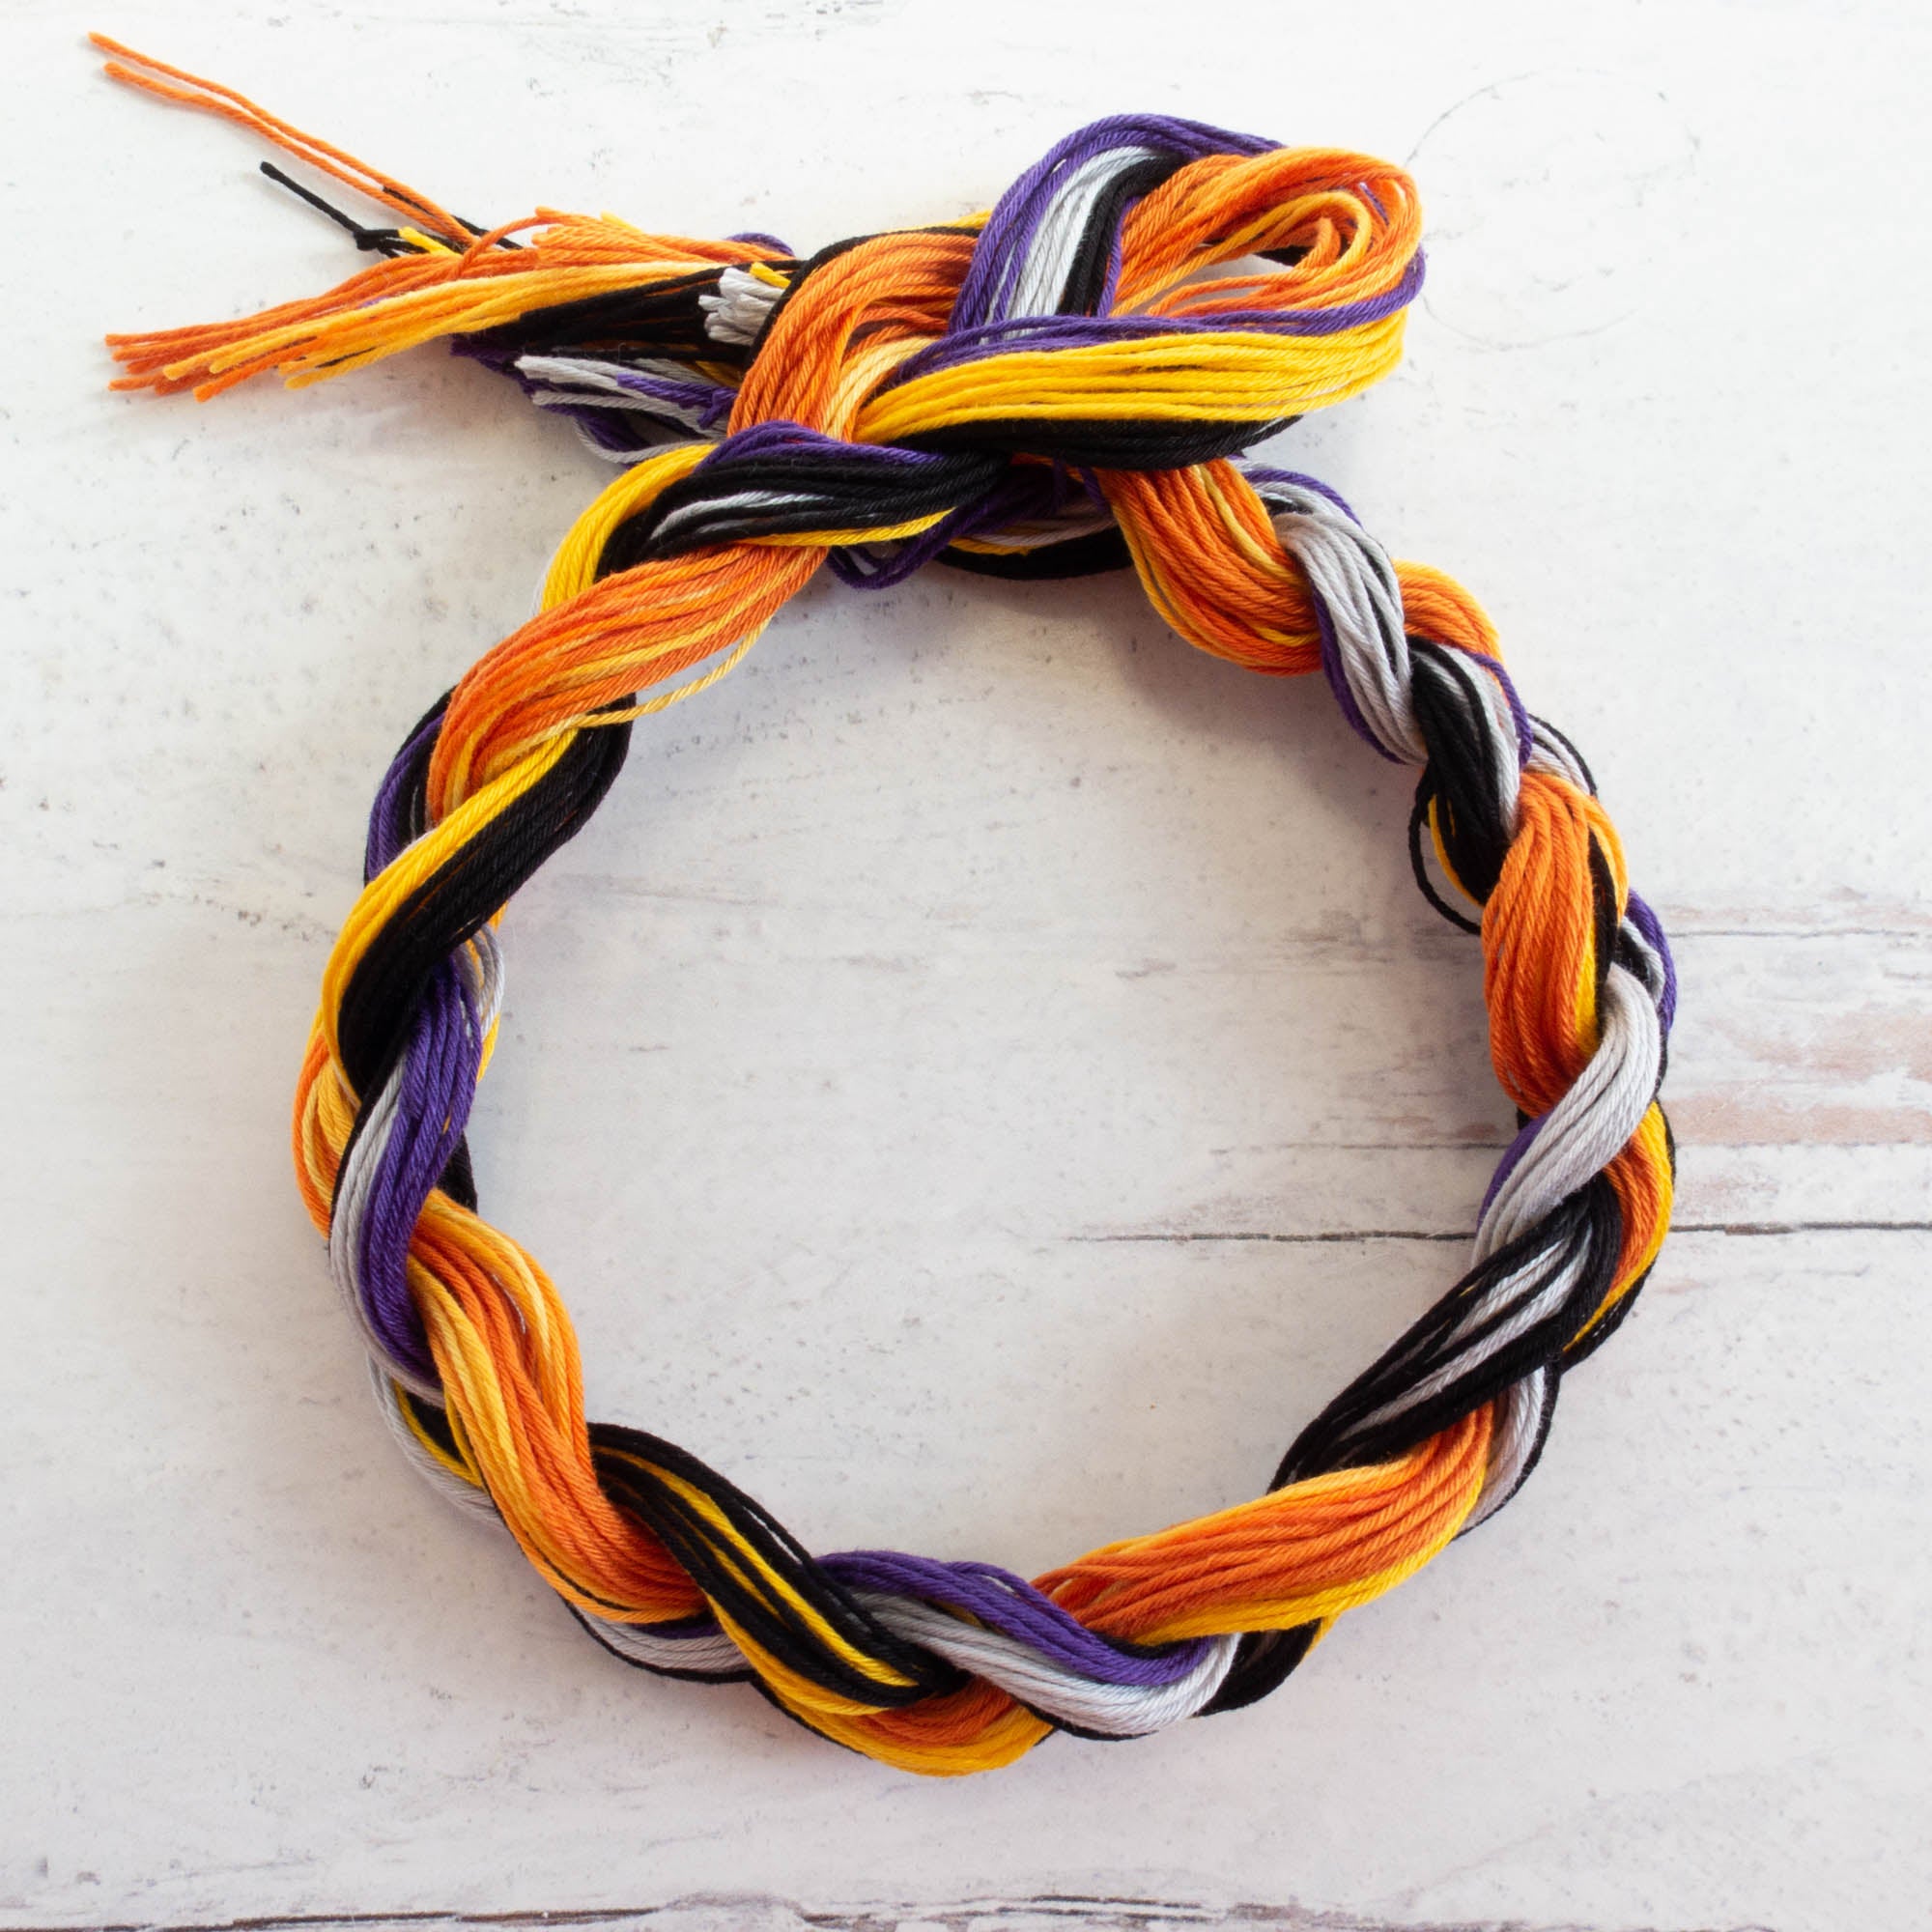 The Braid Society - Decorative knots